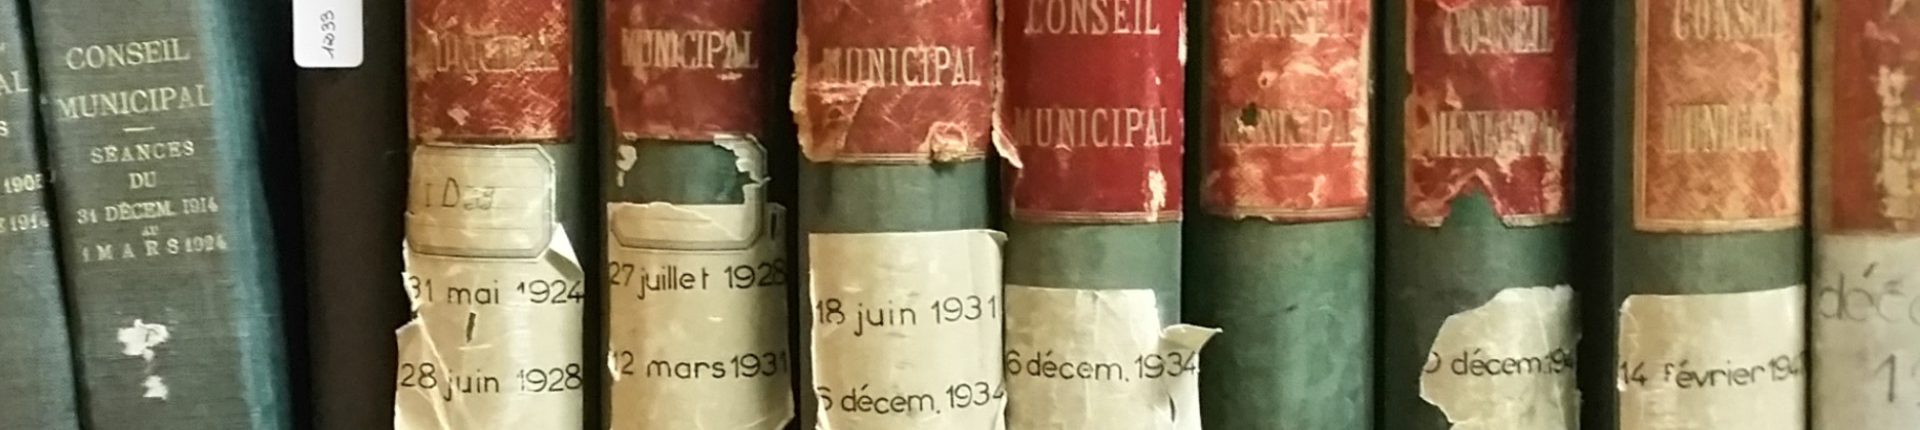 Les Archives municipales, la mémoire de Sèvres